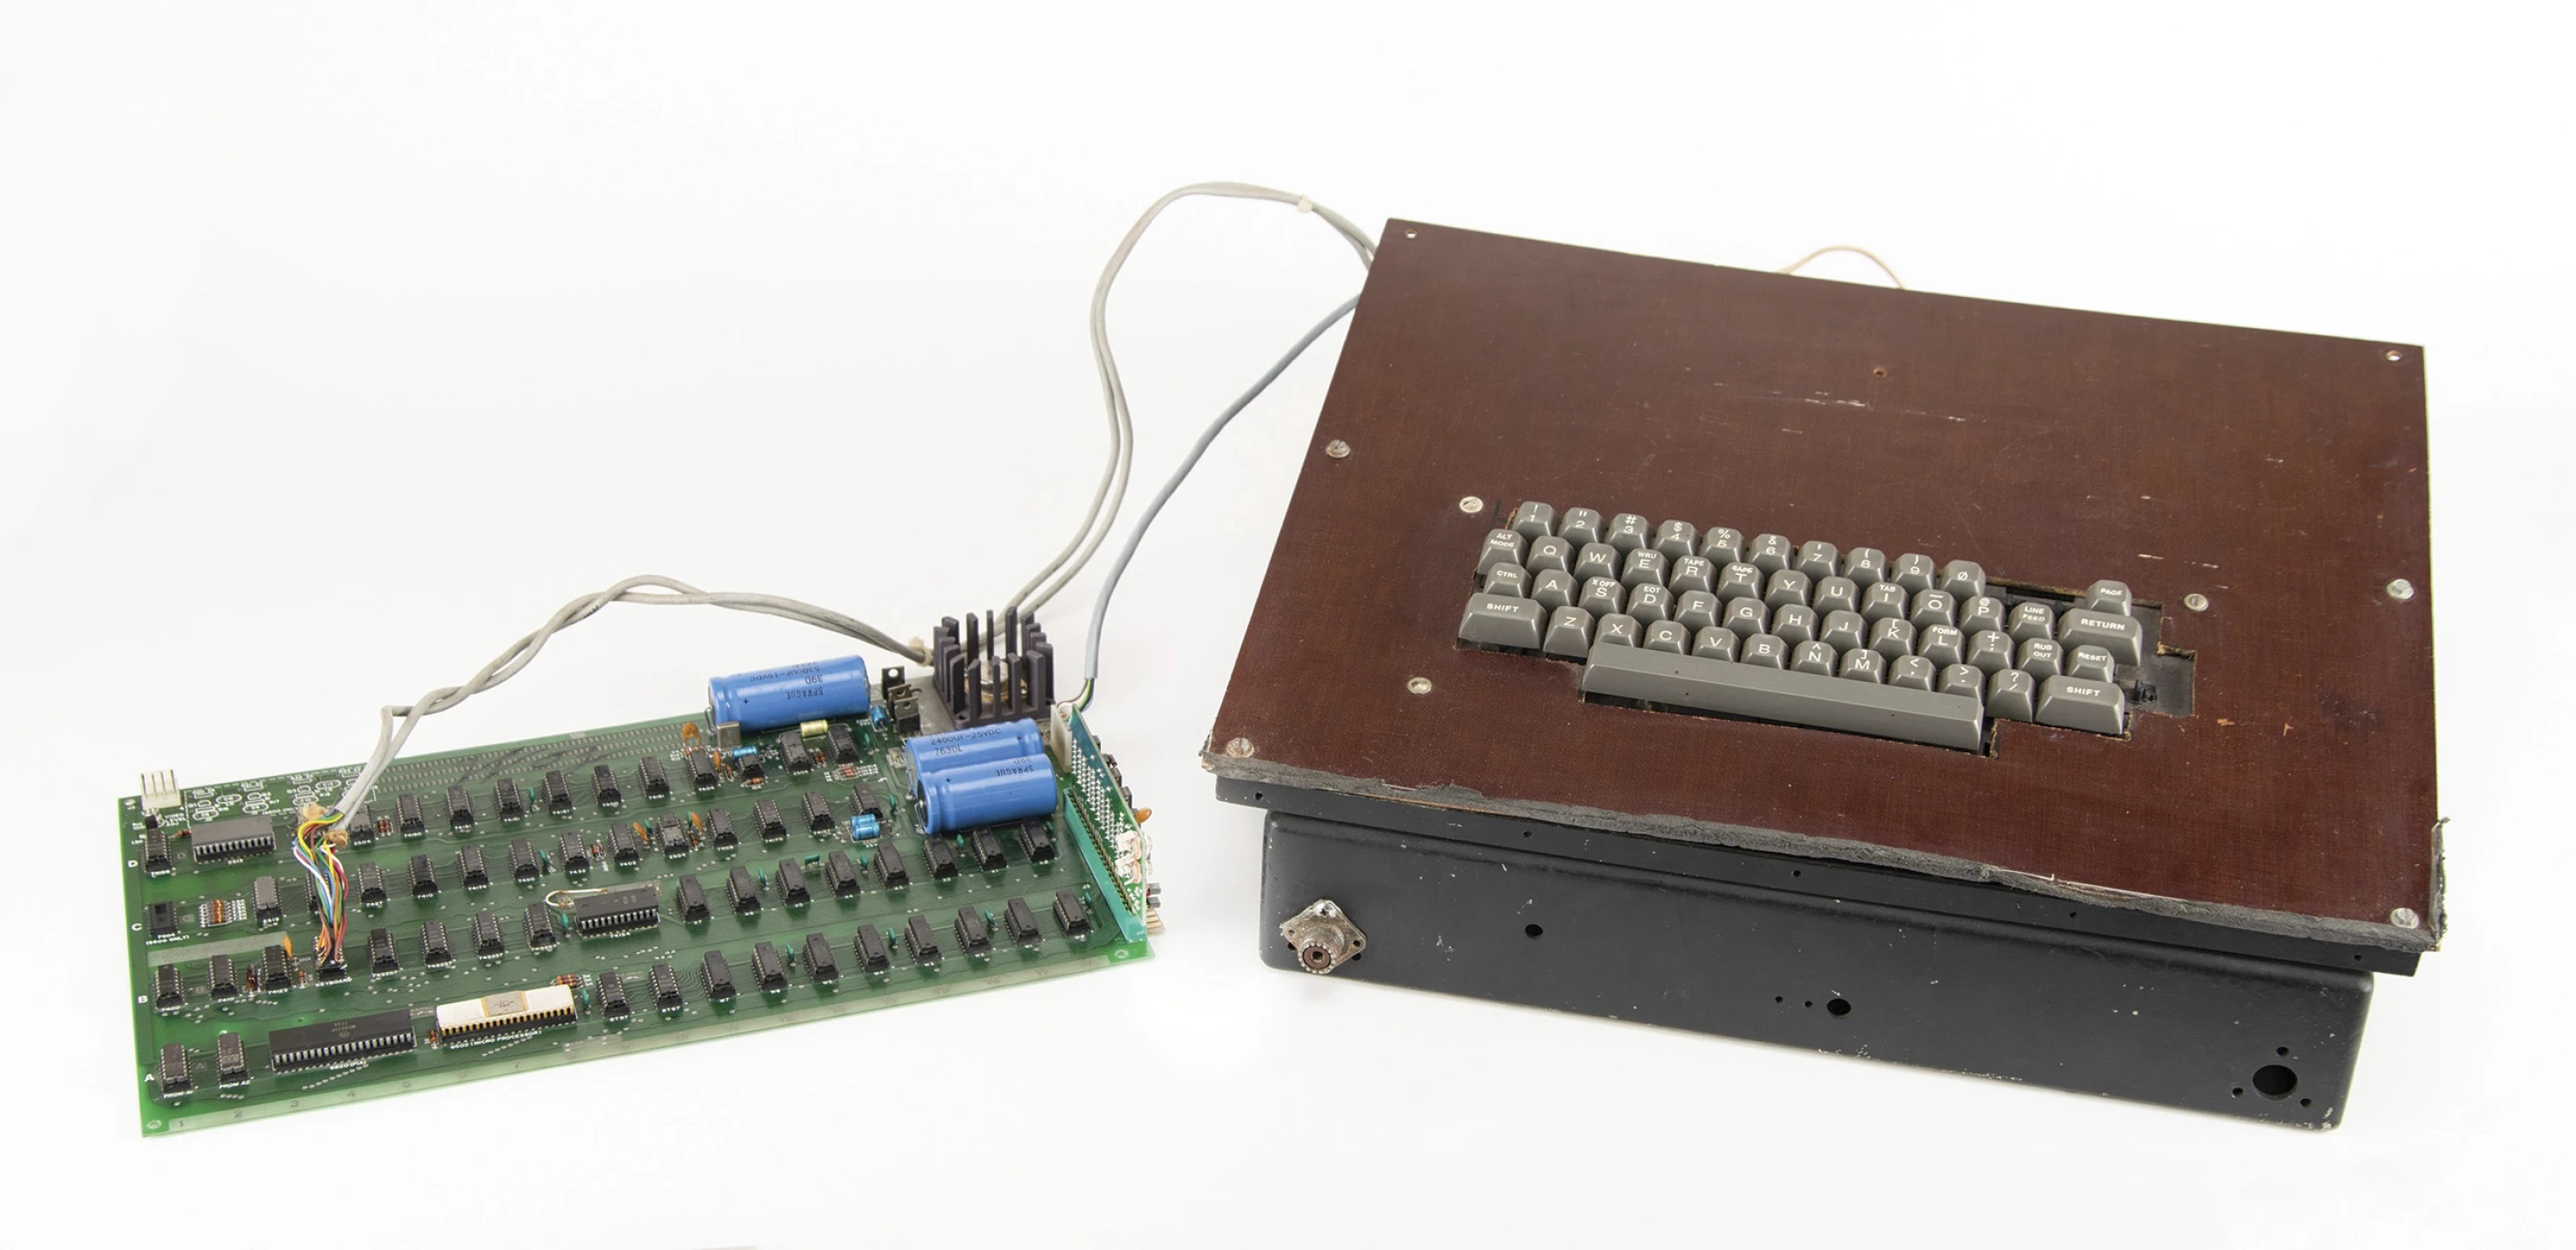 Pierwszy komputer Apple, wydany w latach 70-tych, zostanie sprzedany na aukcji - jego cena ma wynieść 200 000 dolarów